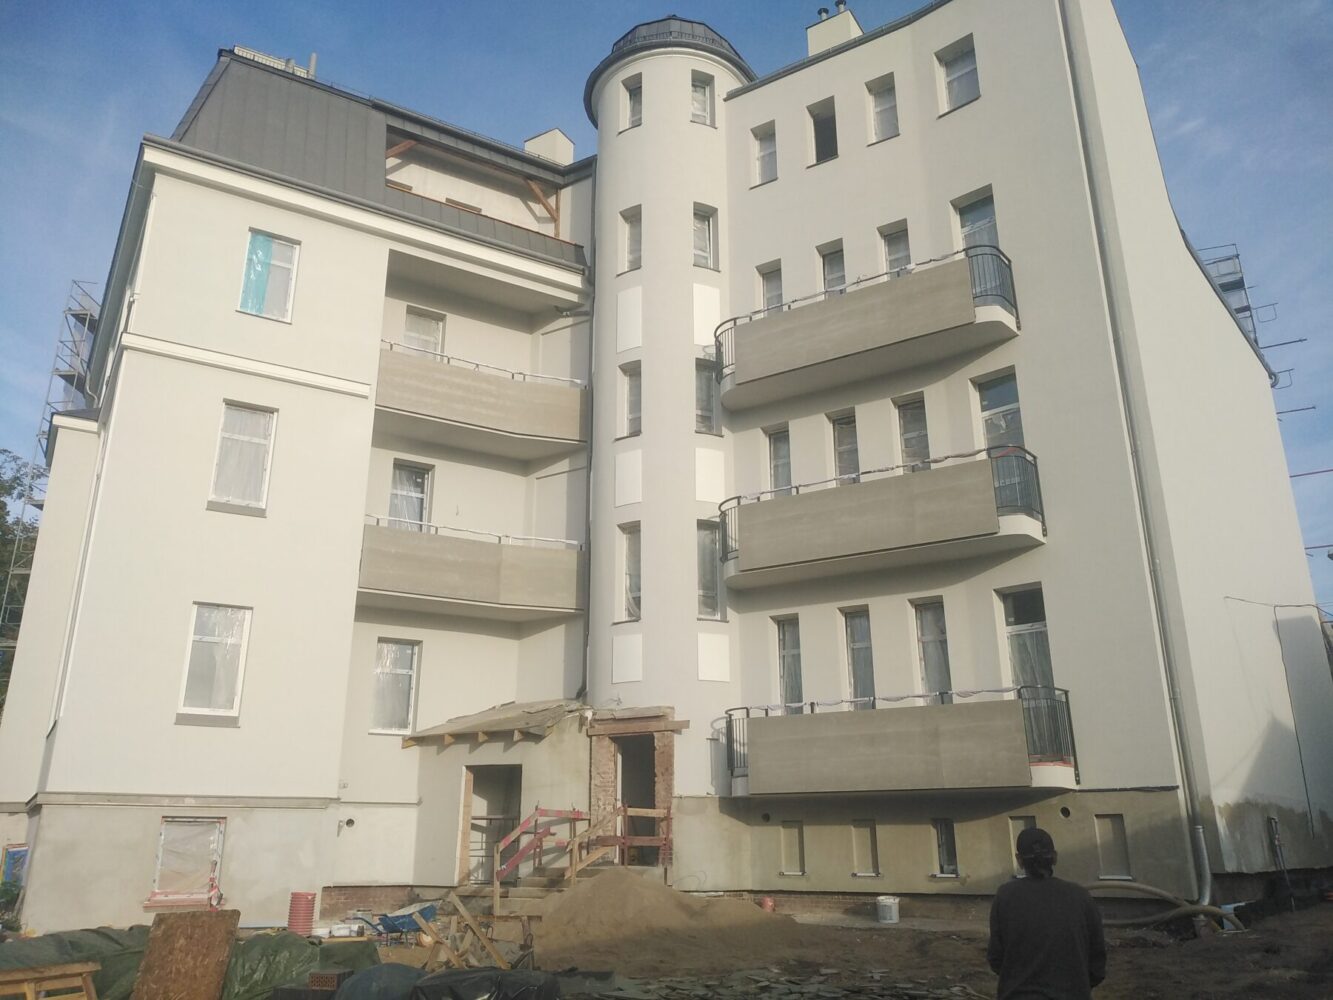 (Polski) Budynek mieszkalny – Pl. Łużycki 1 w Żarach